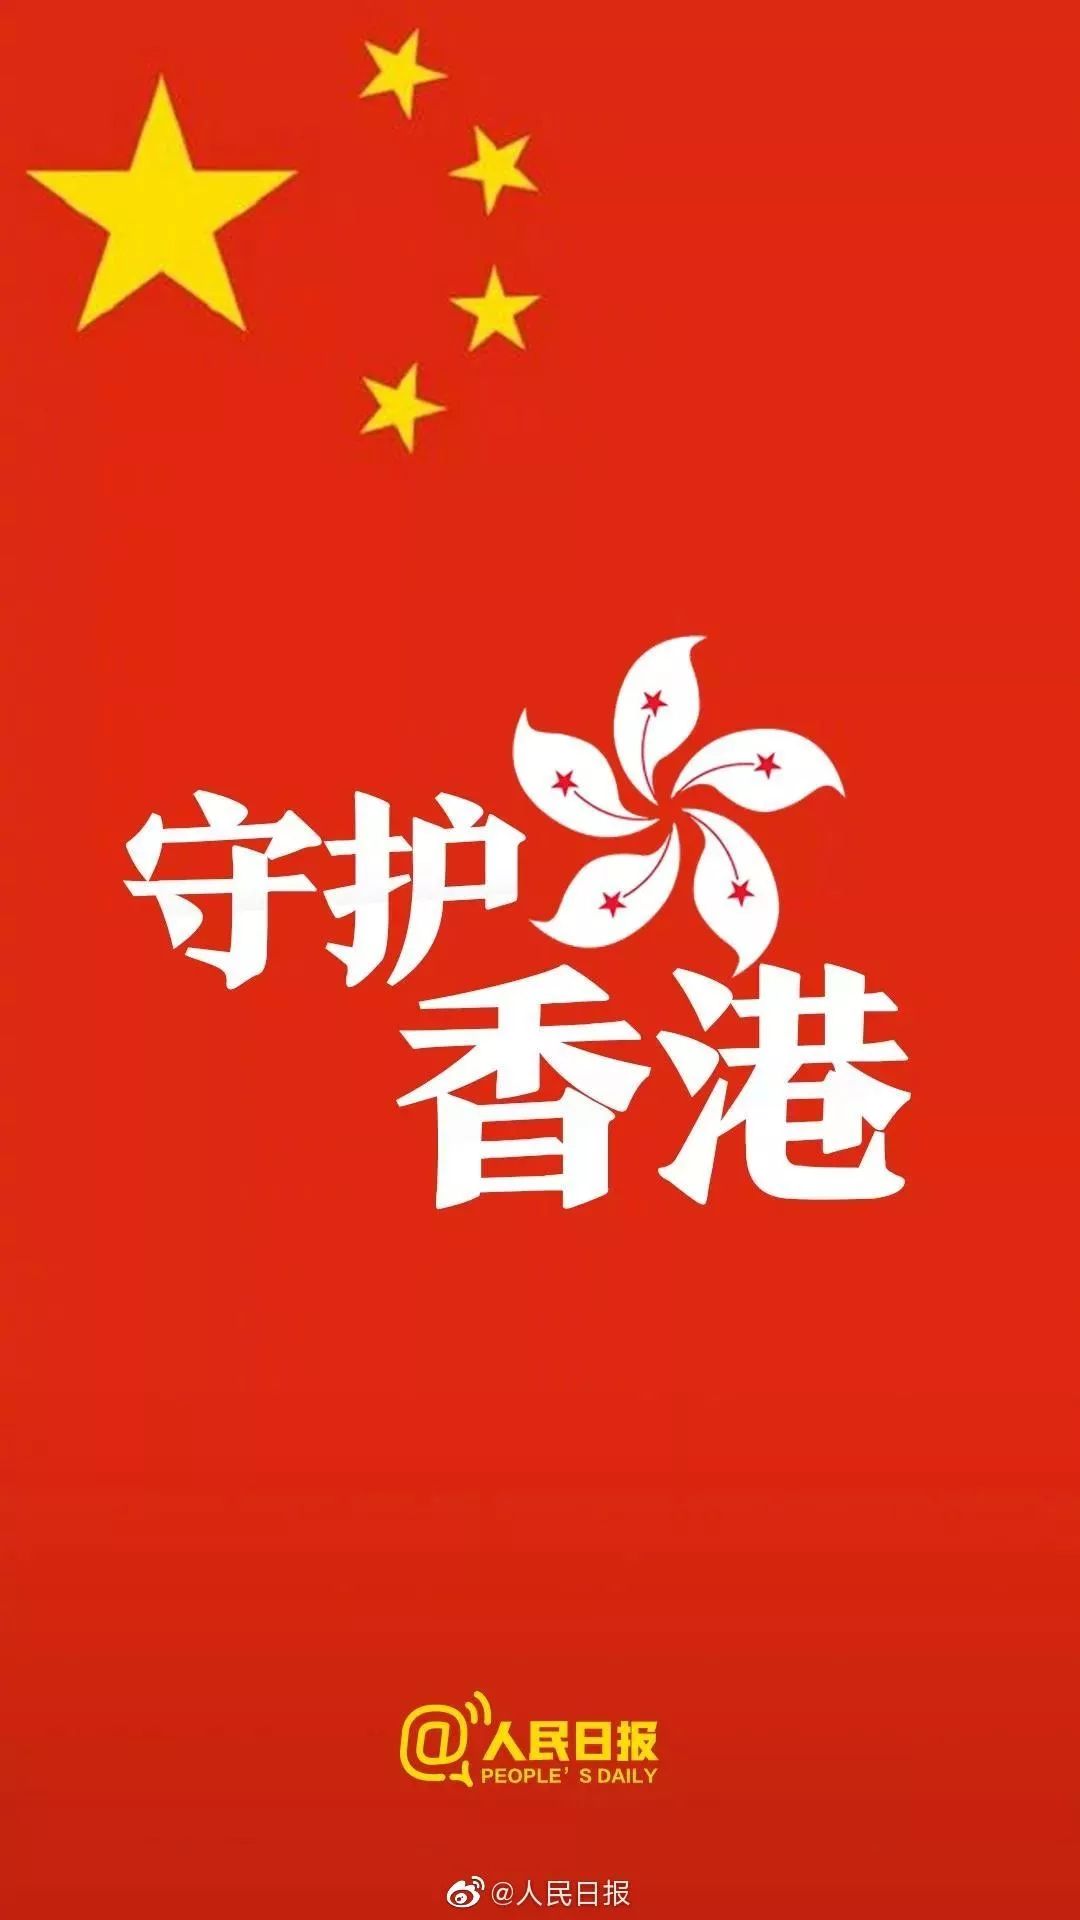 声援香港，用最专业的舞台音响播放国歌，唤起民族大义制止暴乱